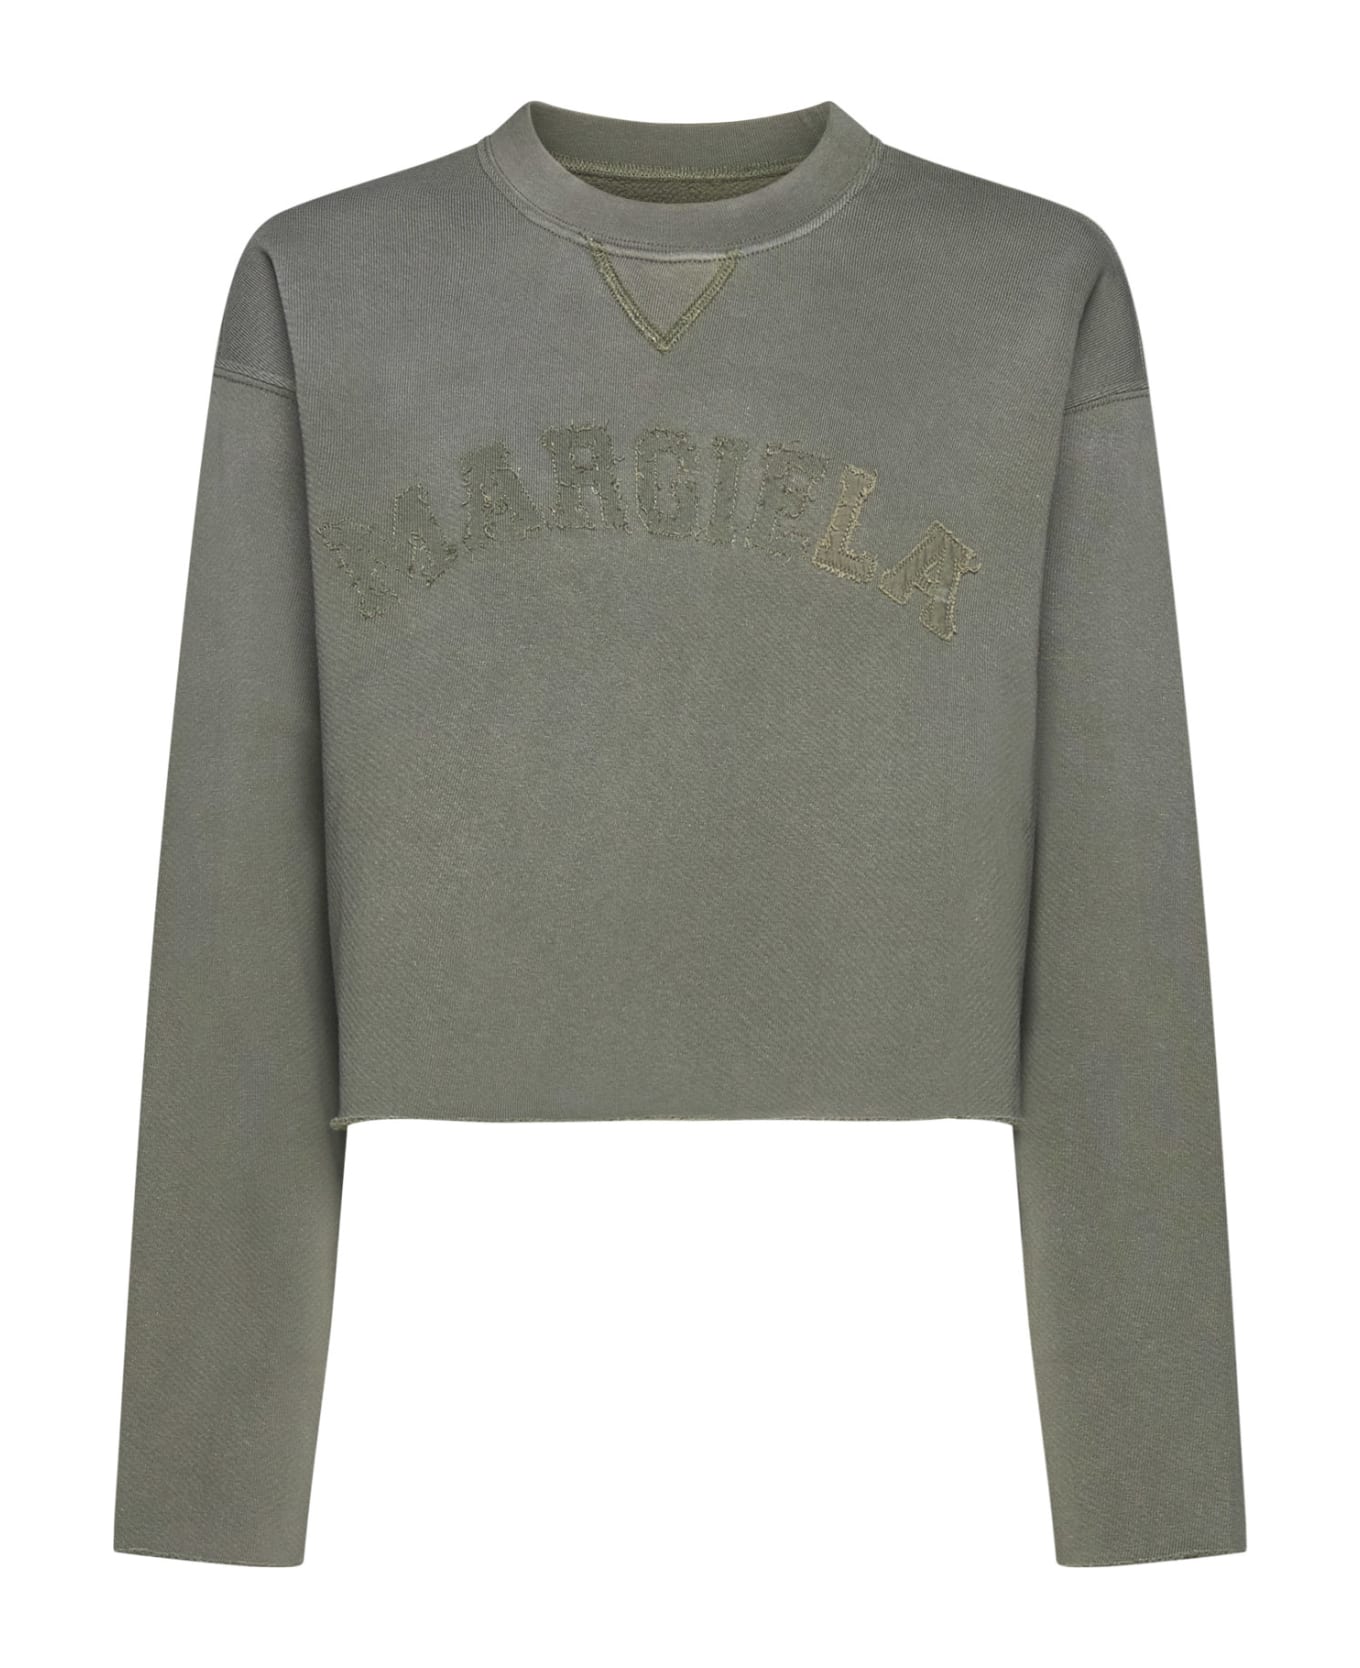 Maison Margiela Vintage Sweatshirt - Olive